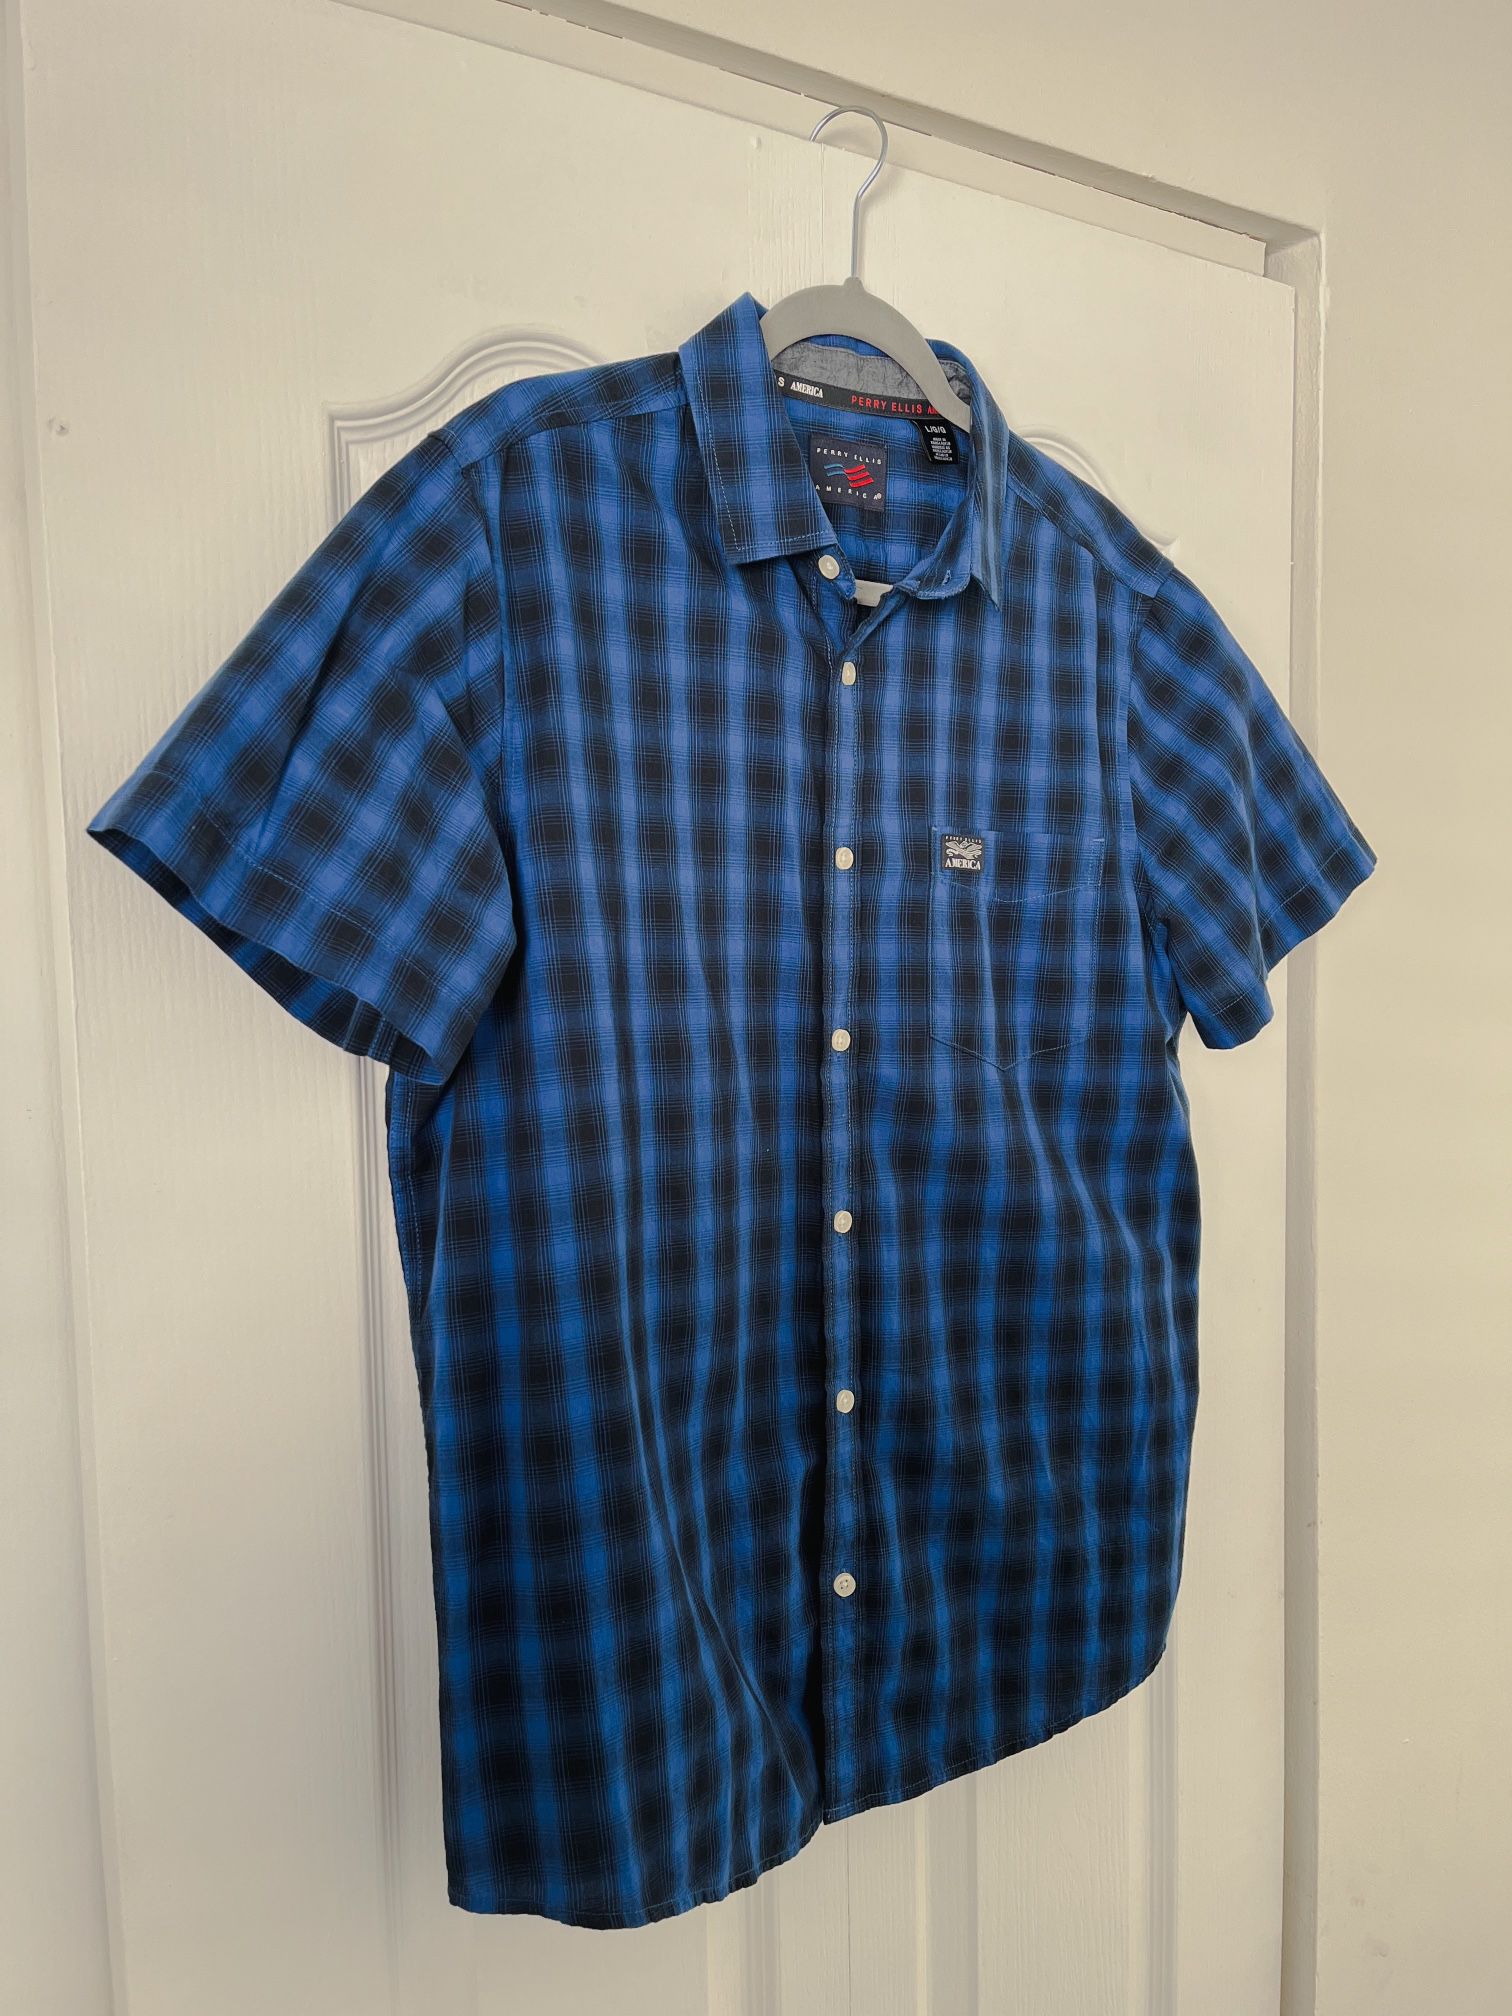 Perry Ellis Blue and Black Plaid Shirt - Men's Size L